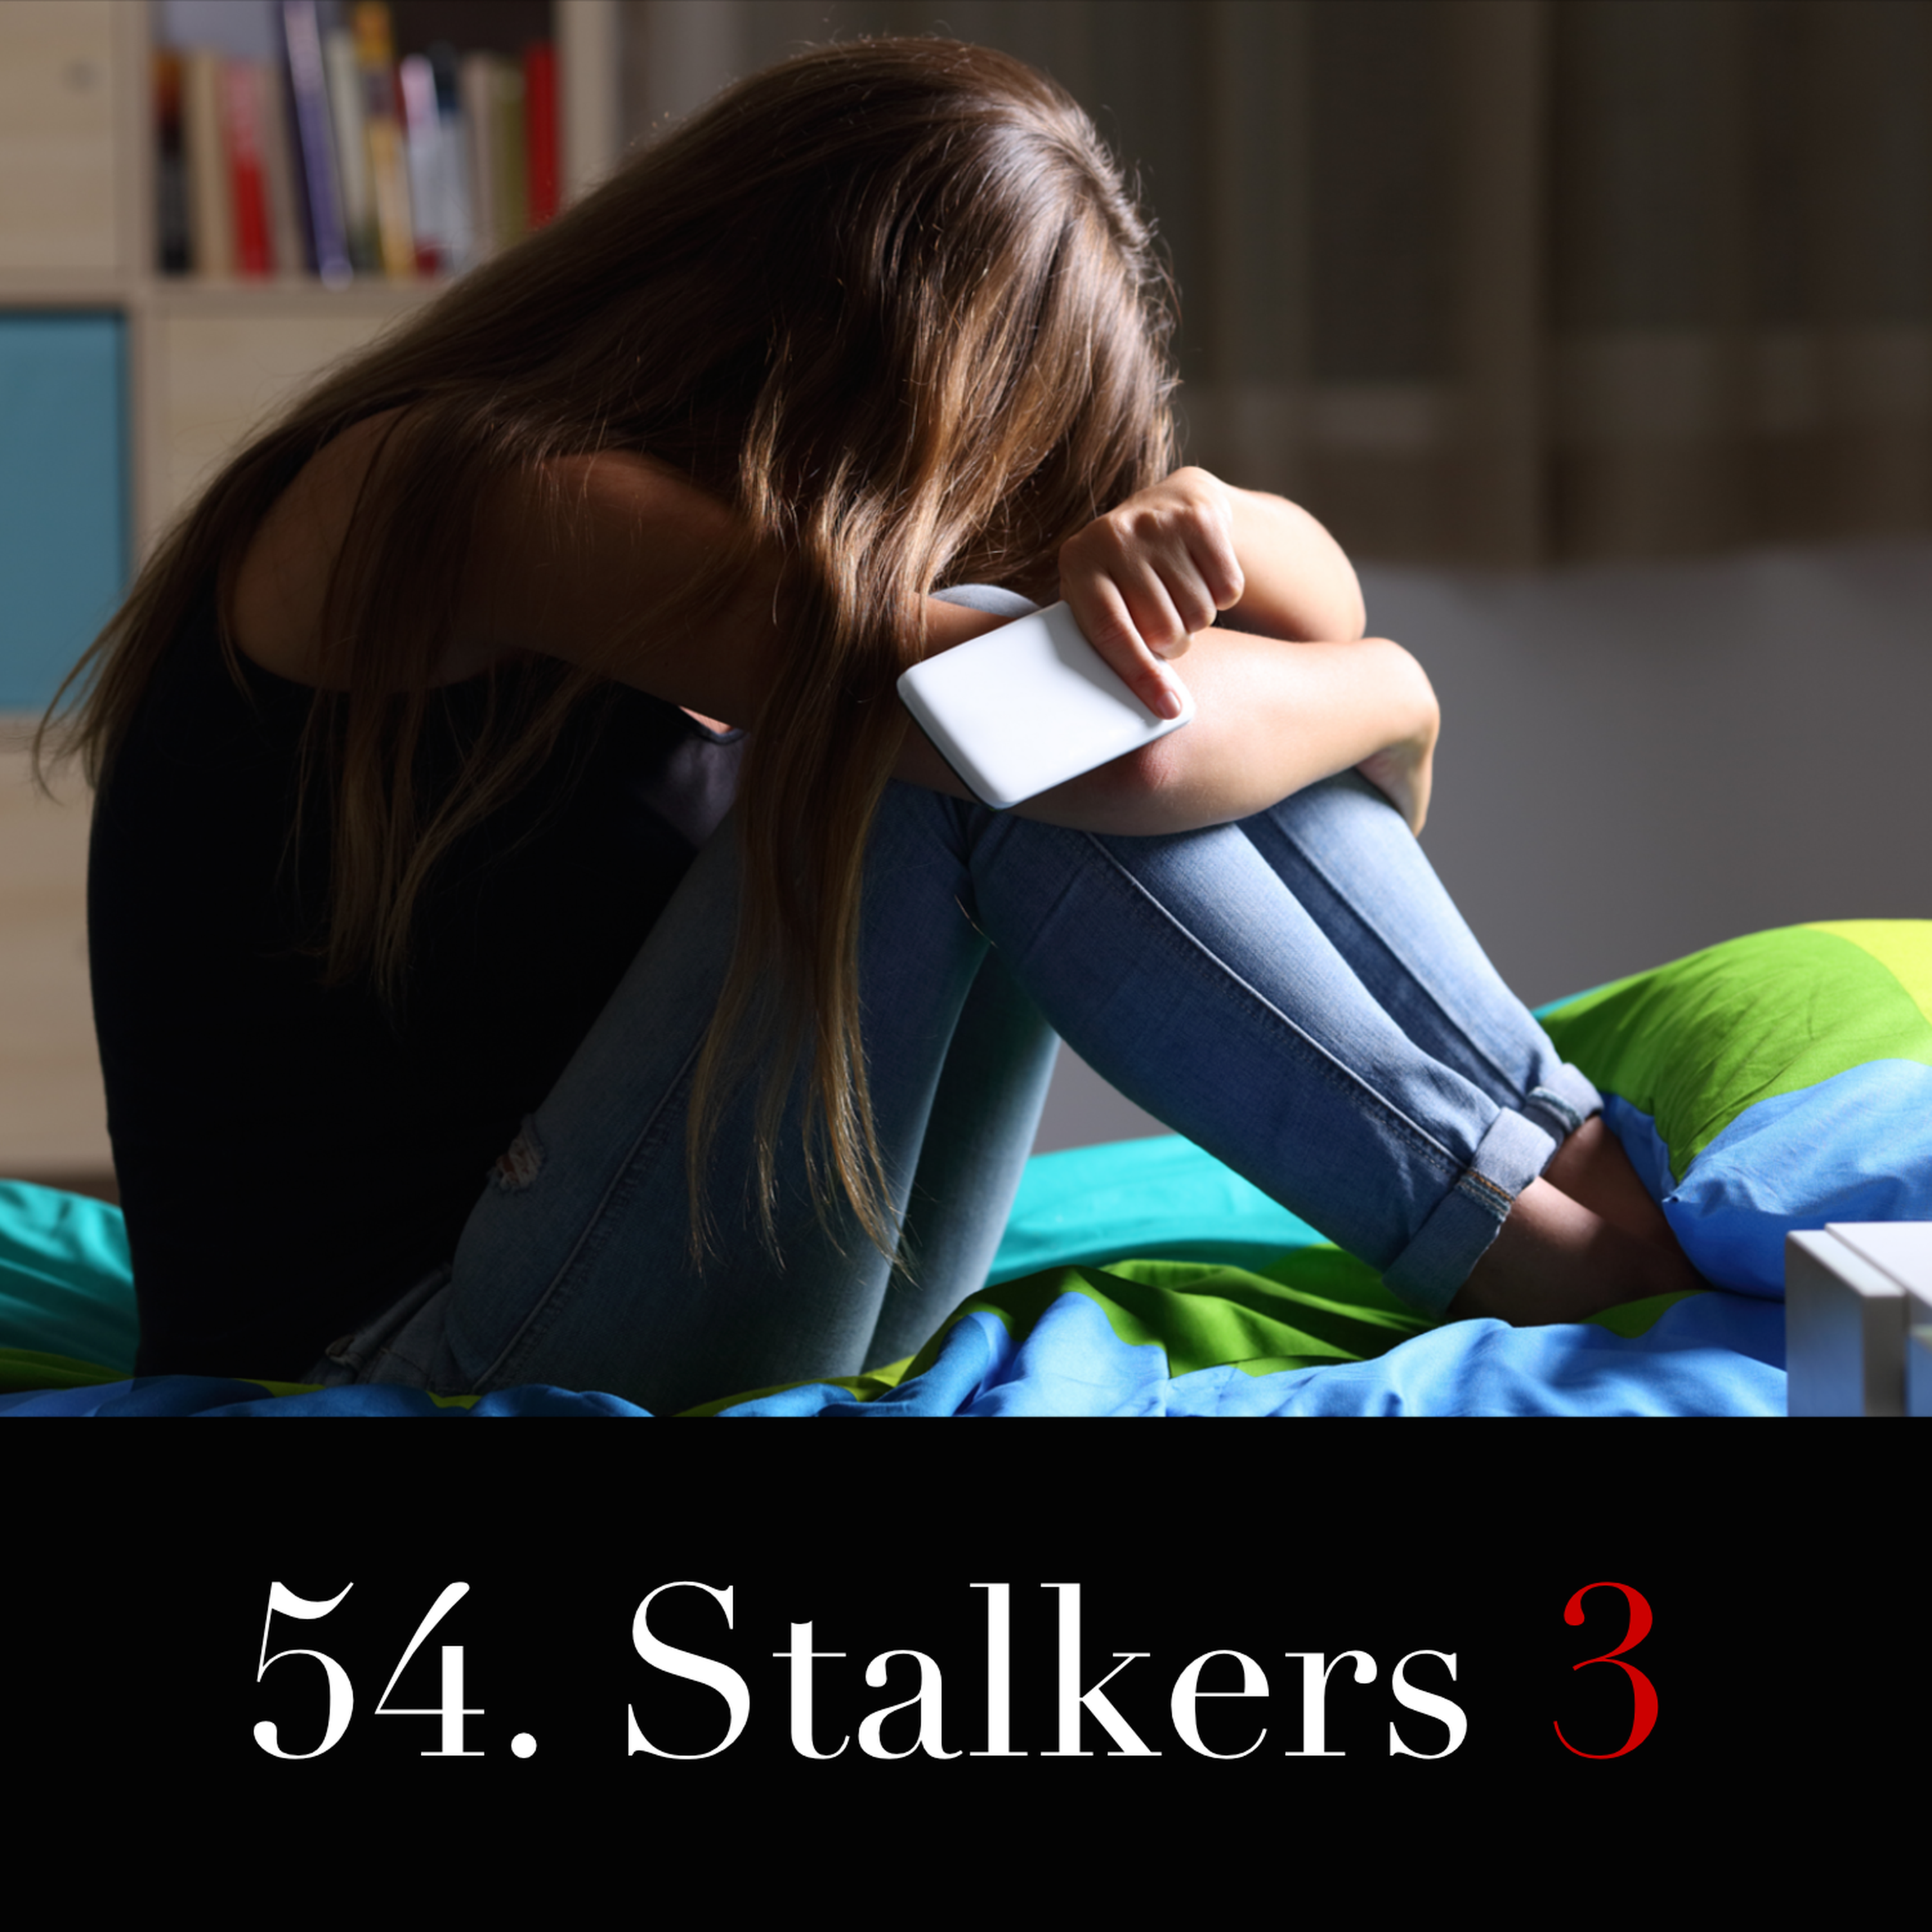 54. Stalkers 3